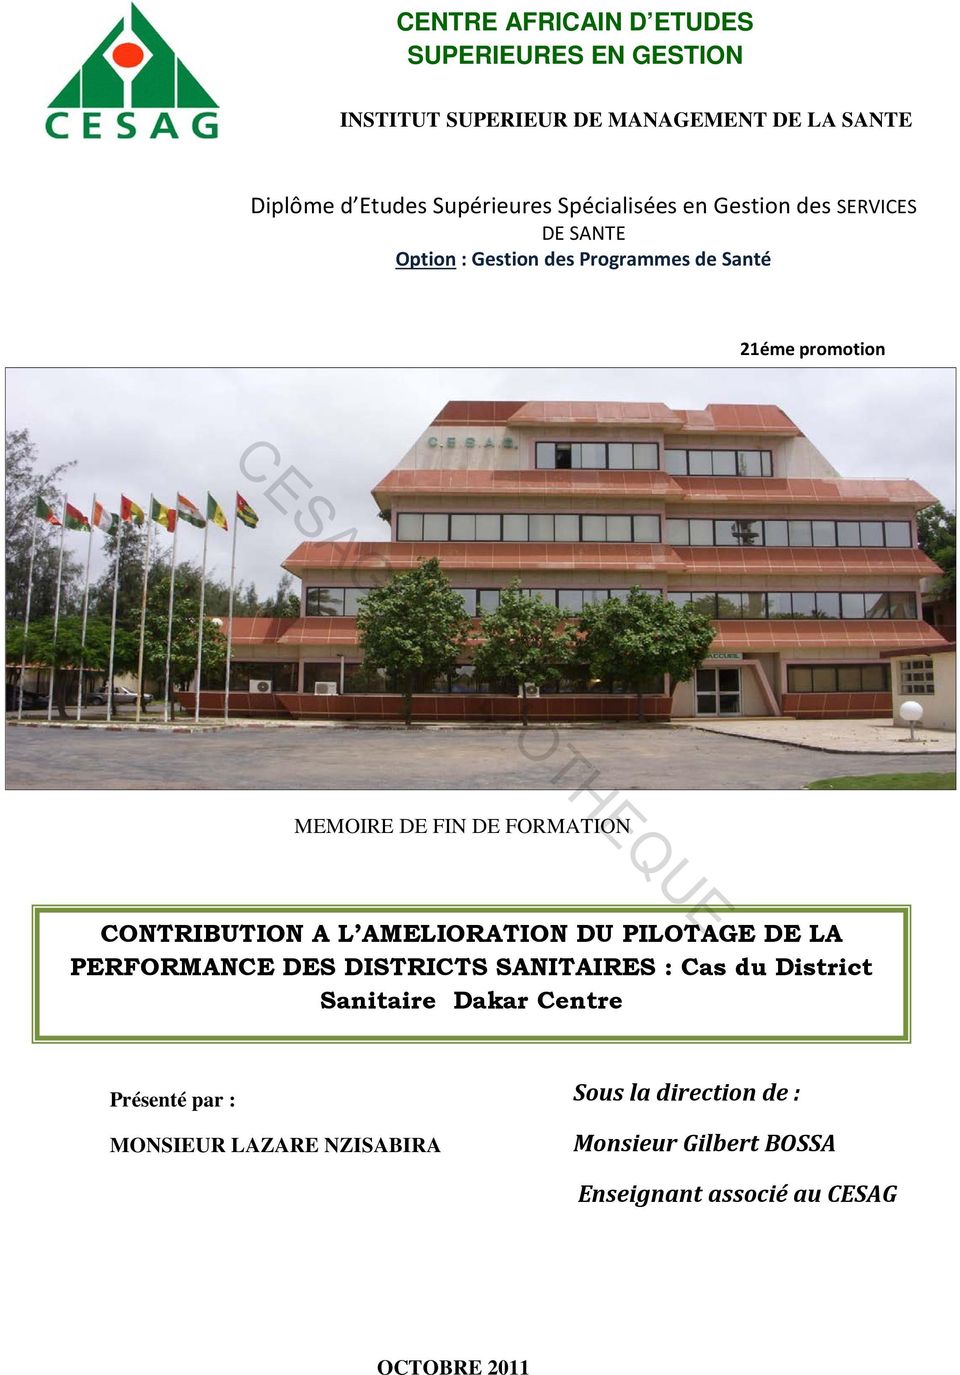 FORMATION CONTRIBUTION A L AMELIORATION DU PILOTAGE DE LA PERFORMANCE DES DISTRICTS SANITAIRES : Cas du District Sanitaire Dakar